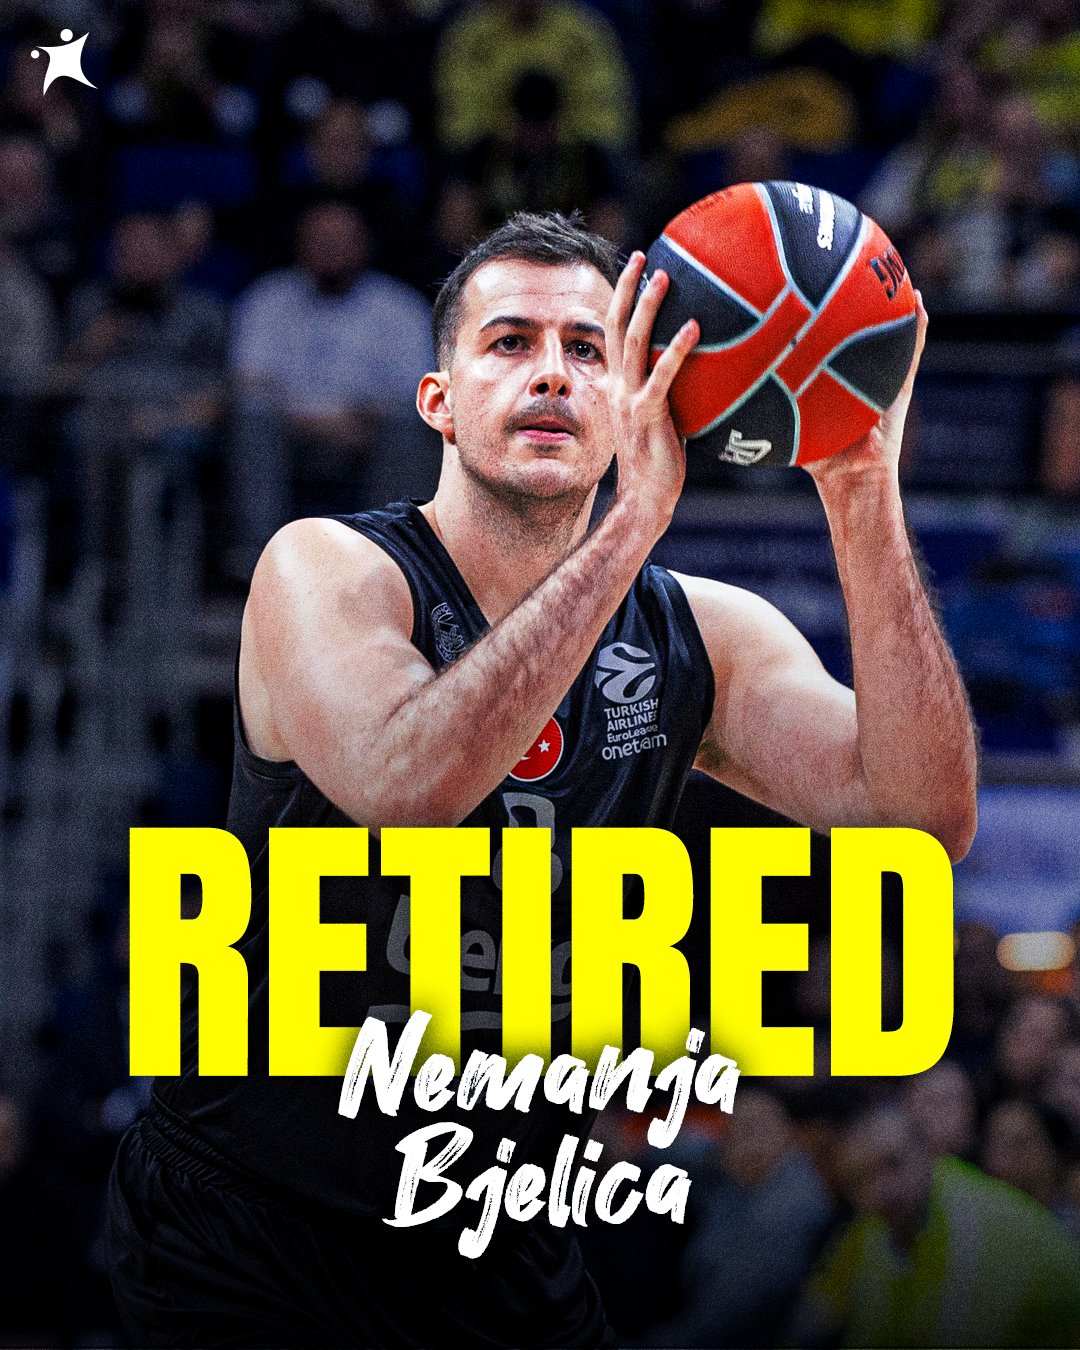 👏35岁的别利察自宣退役 结束20年职业篮球生涯